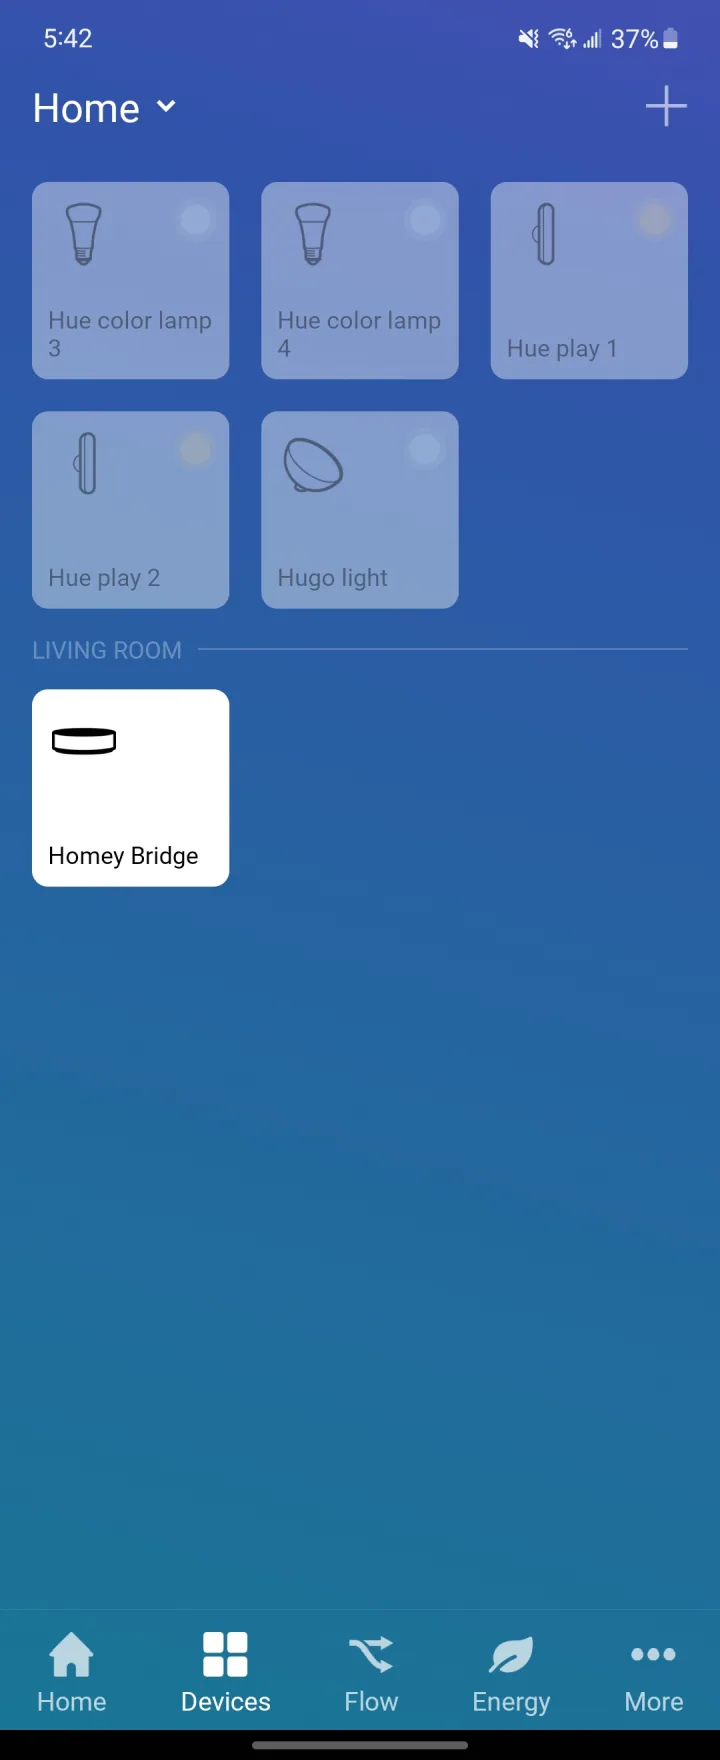 Homey Bridge App - Showcase 001